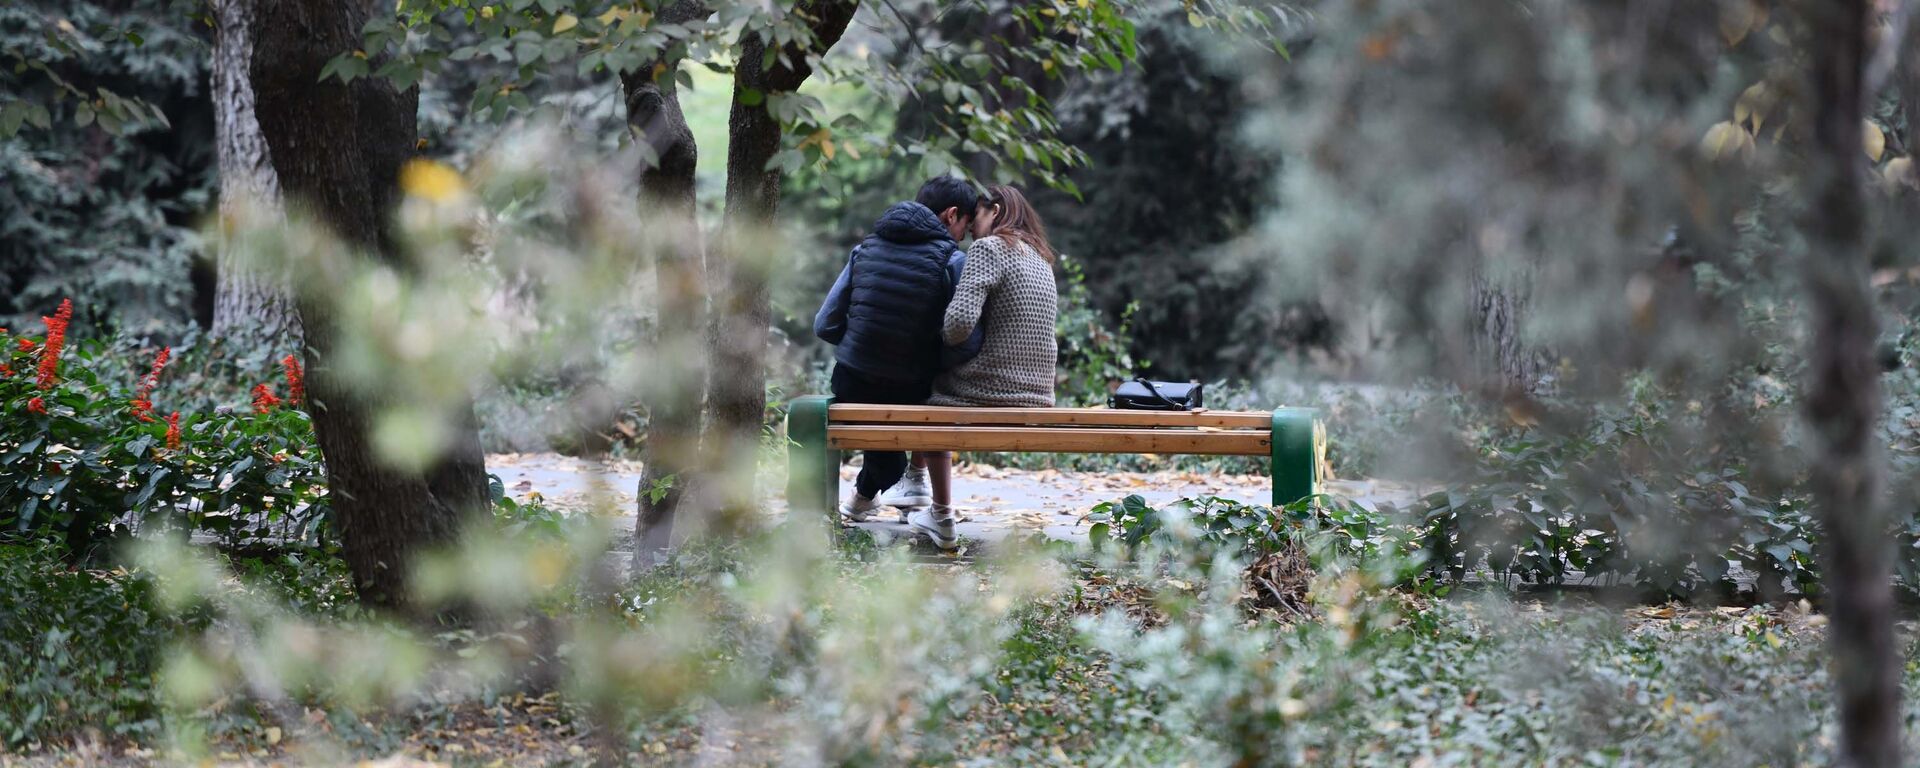 Влюбленные в парке на скамейке - Sputnik Таджикистан, 1920, 26.02.2021